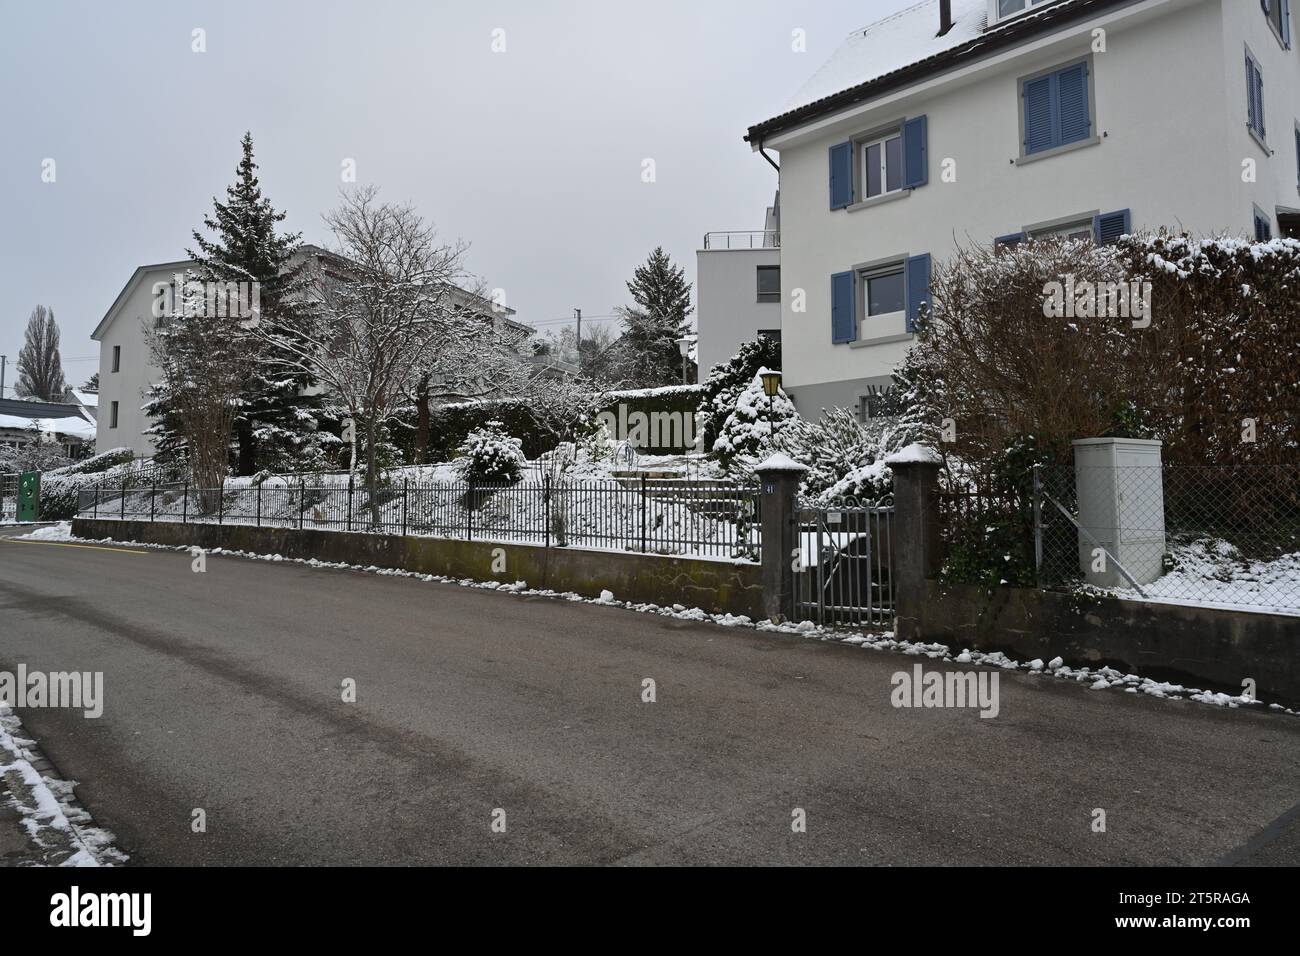 Rue dans le quartier résidentiel du village Urdorf en Suisse en hiver. Il y a une fine couche de neige surtout sur trois. Banque D'Images